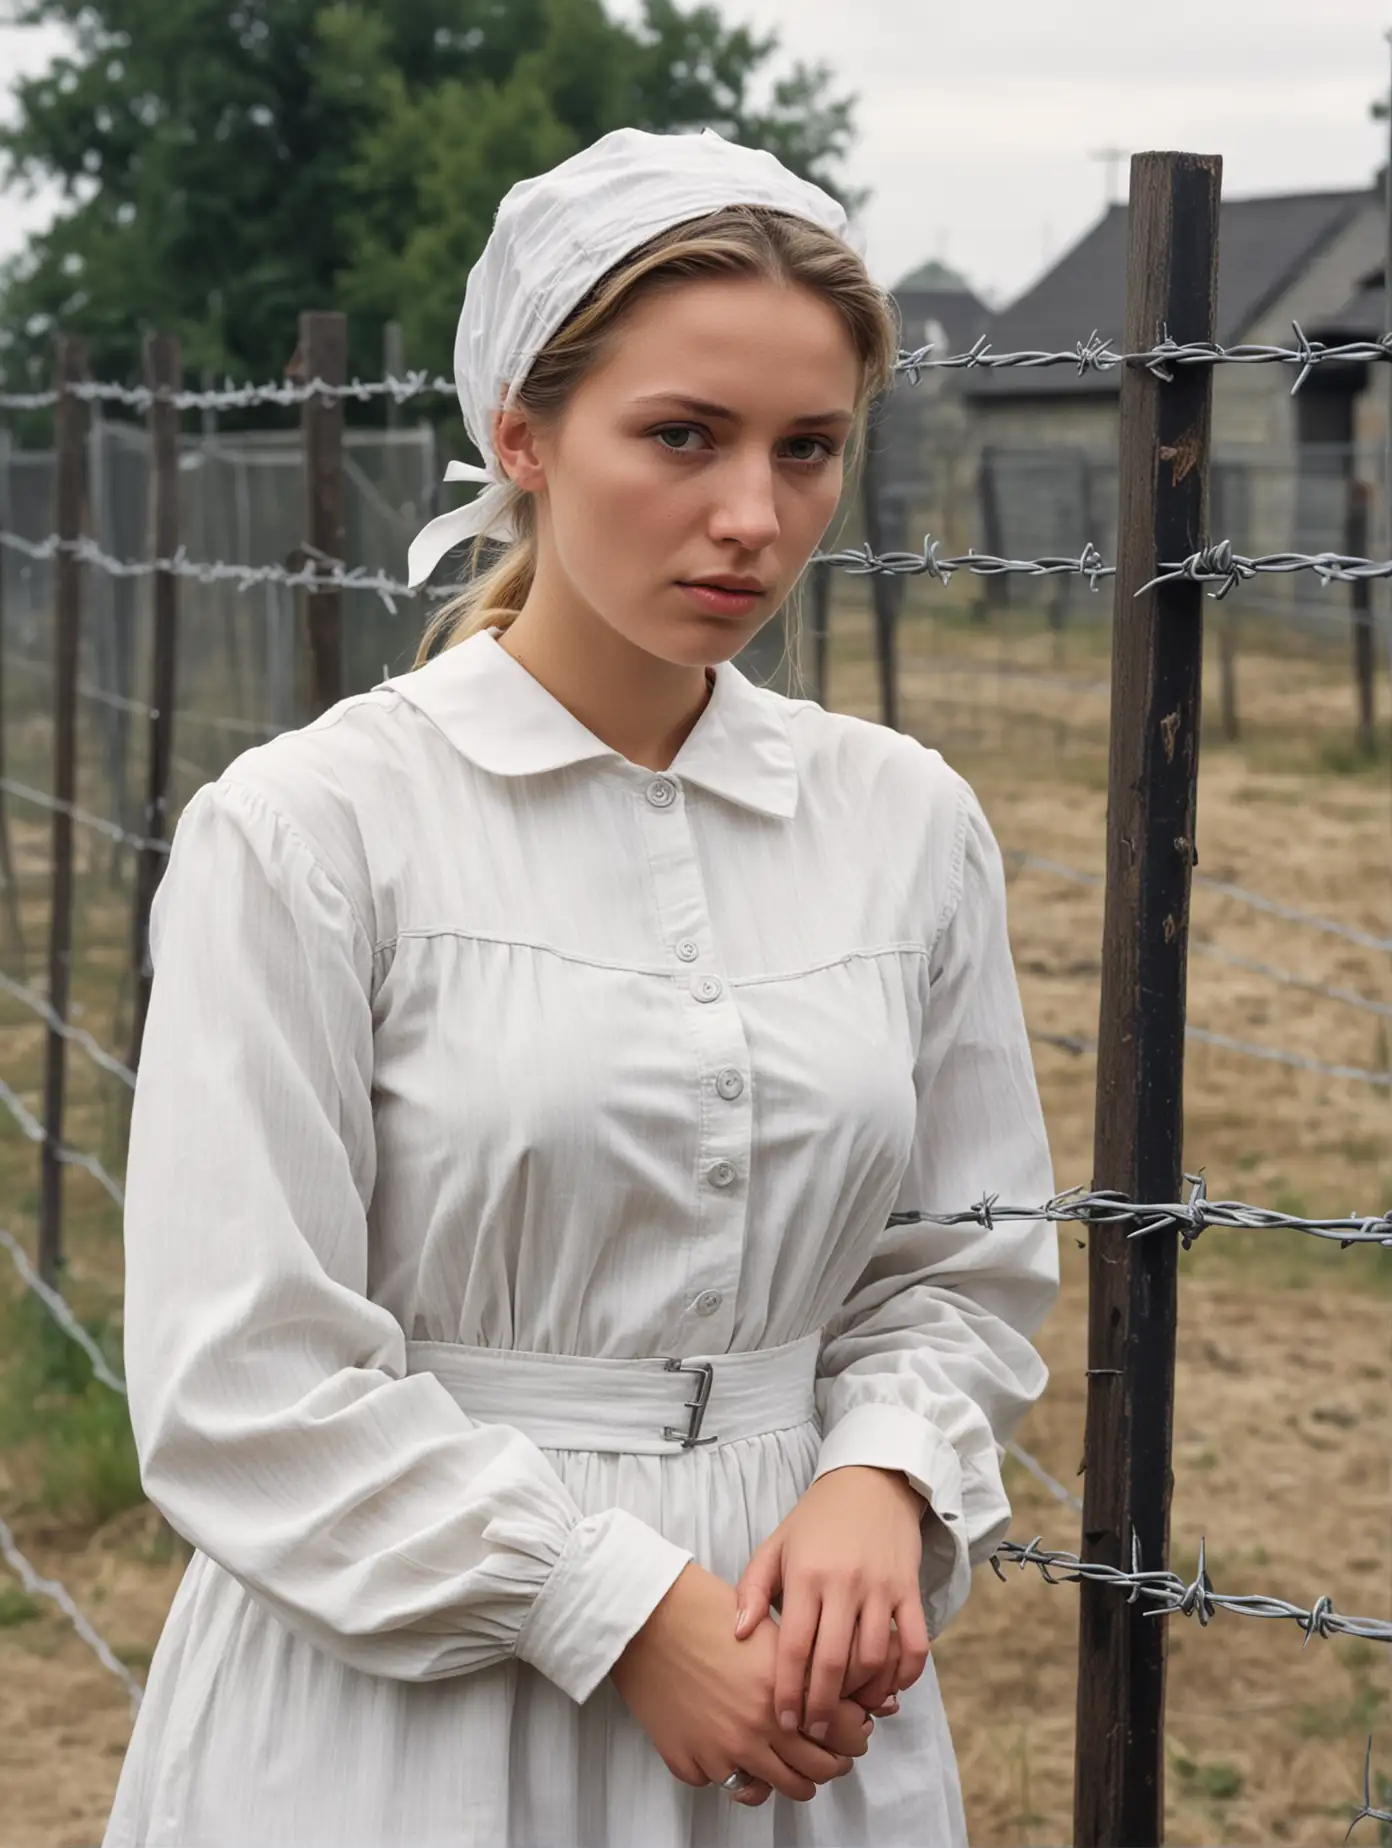 German Teen Female Prisoner in 1900s Yard